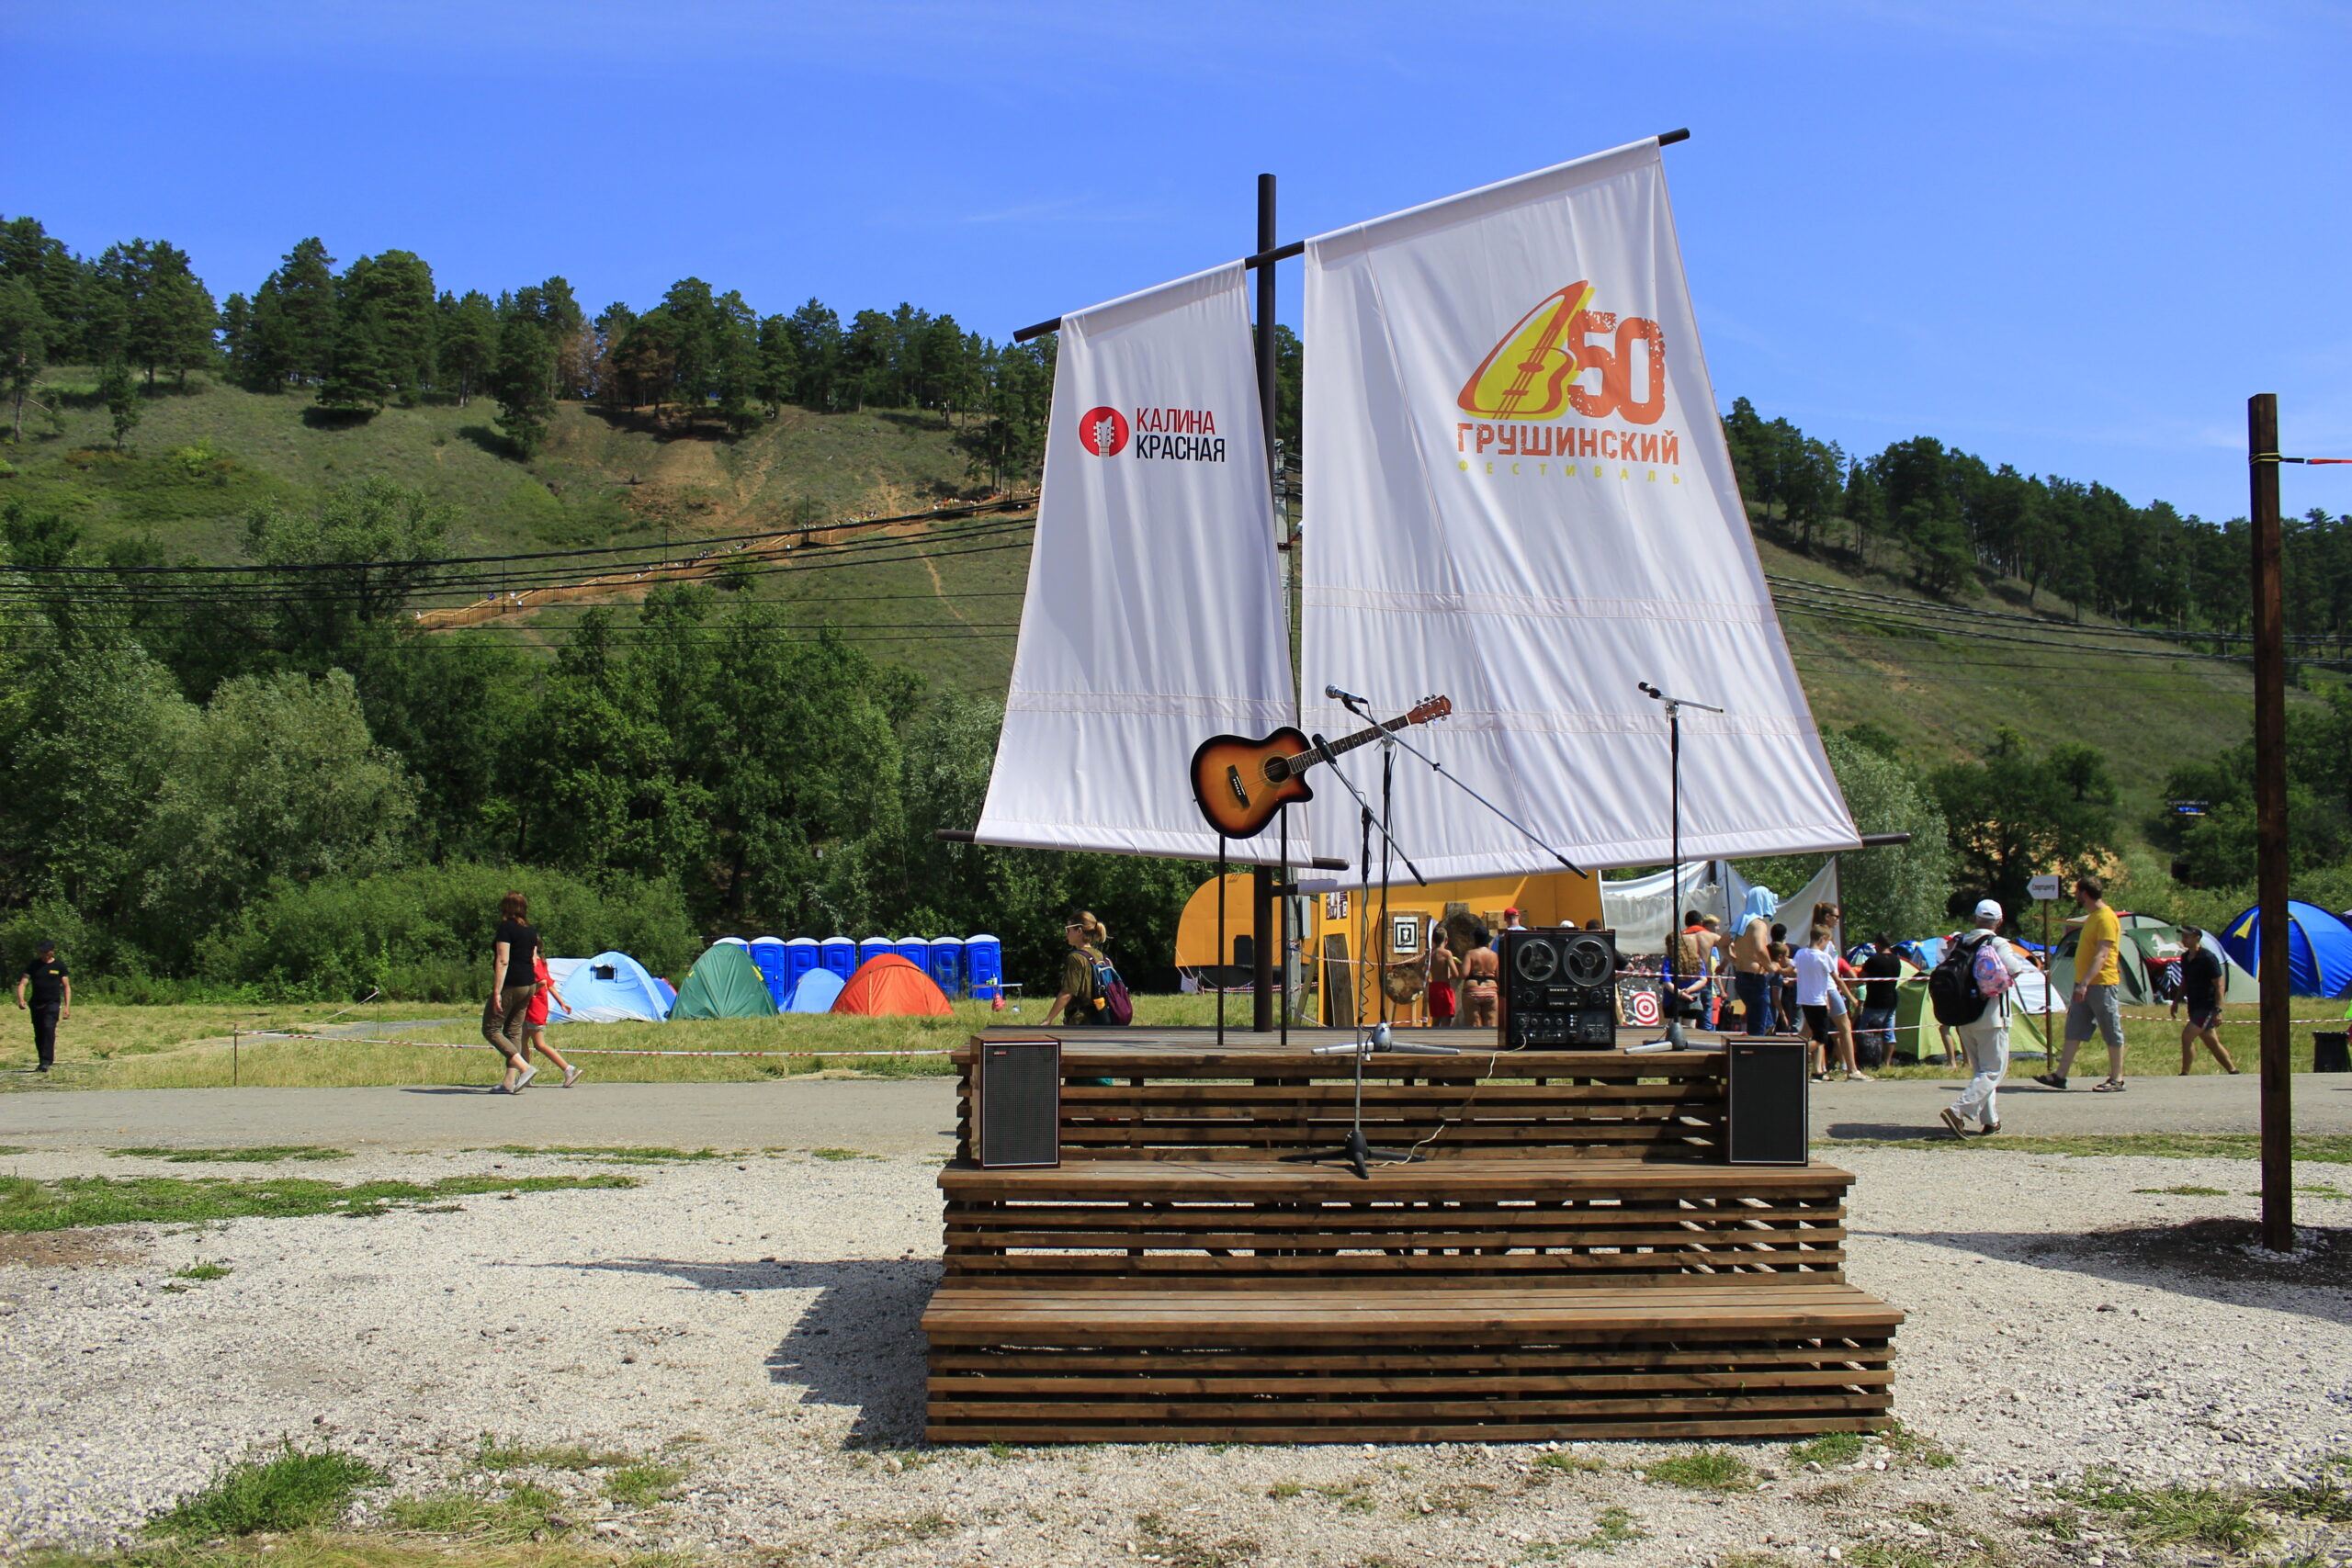 Организаторы Грушинского фестиваля проинформировали гостей о работе транспорта 2 июля для выезда с поляны